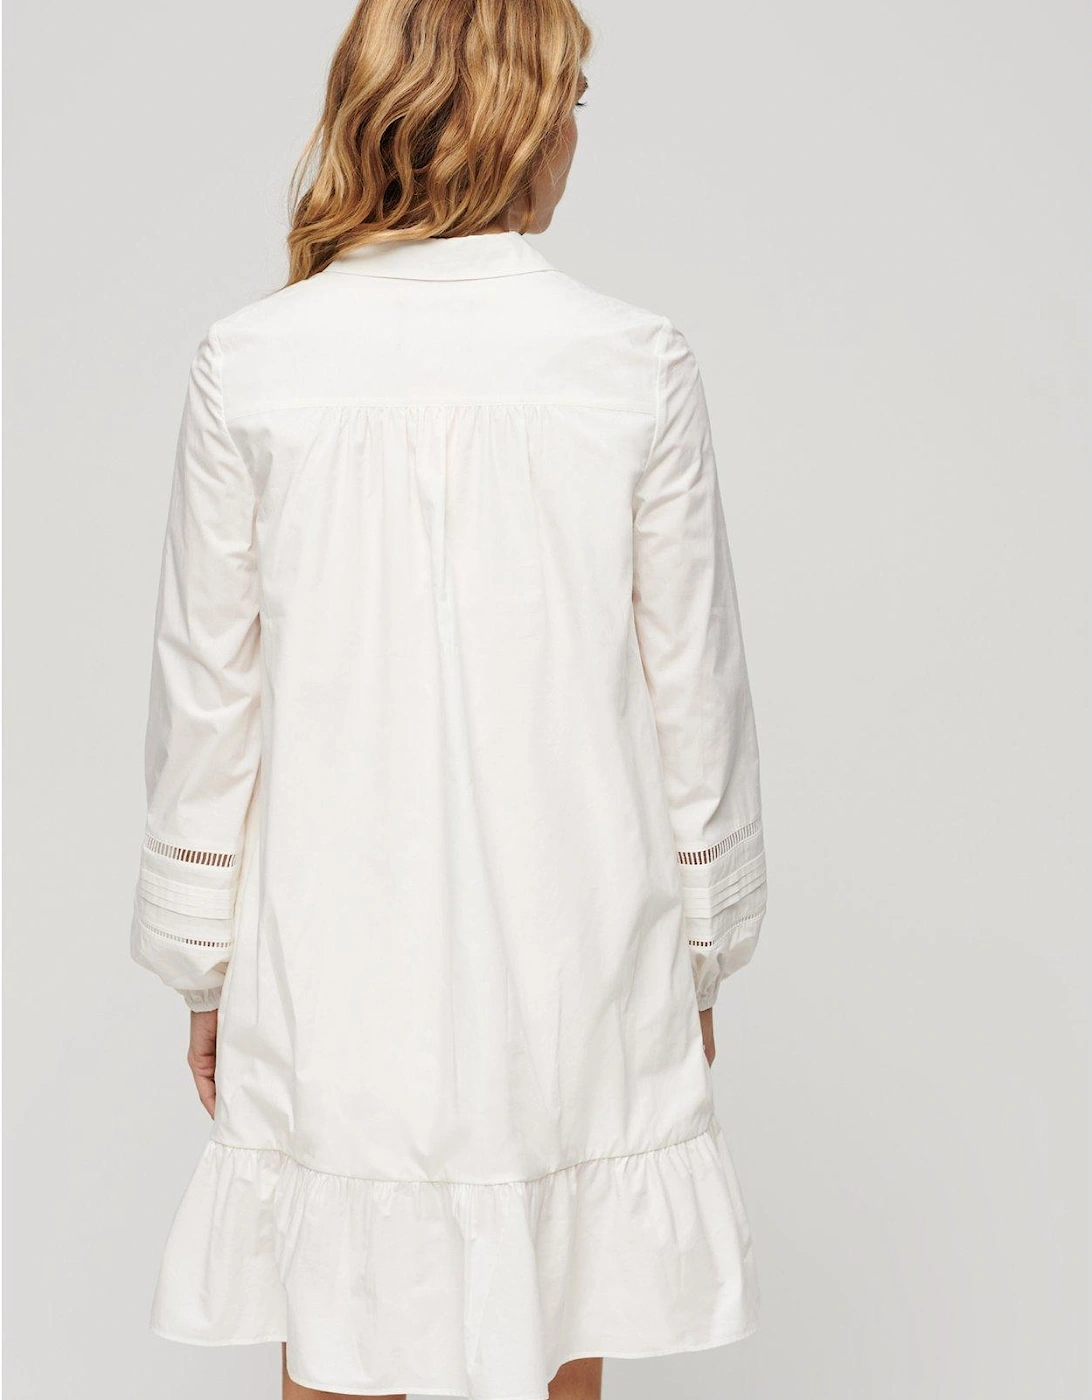 Lace Mix Shirt Dress - White